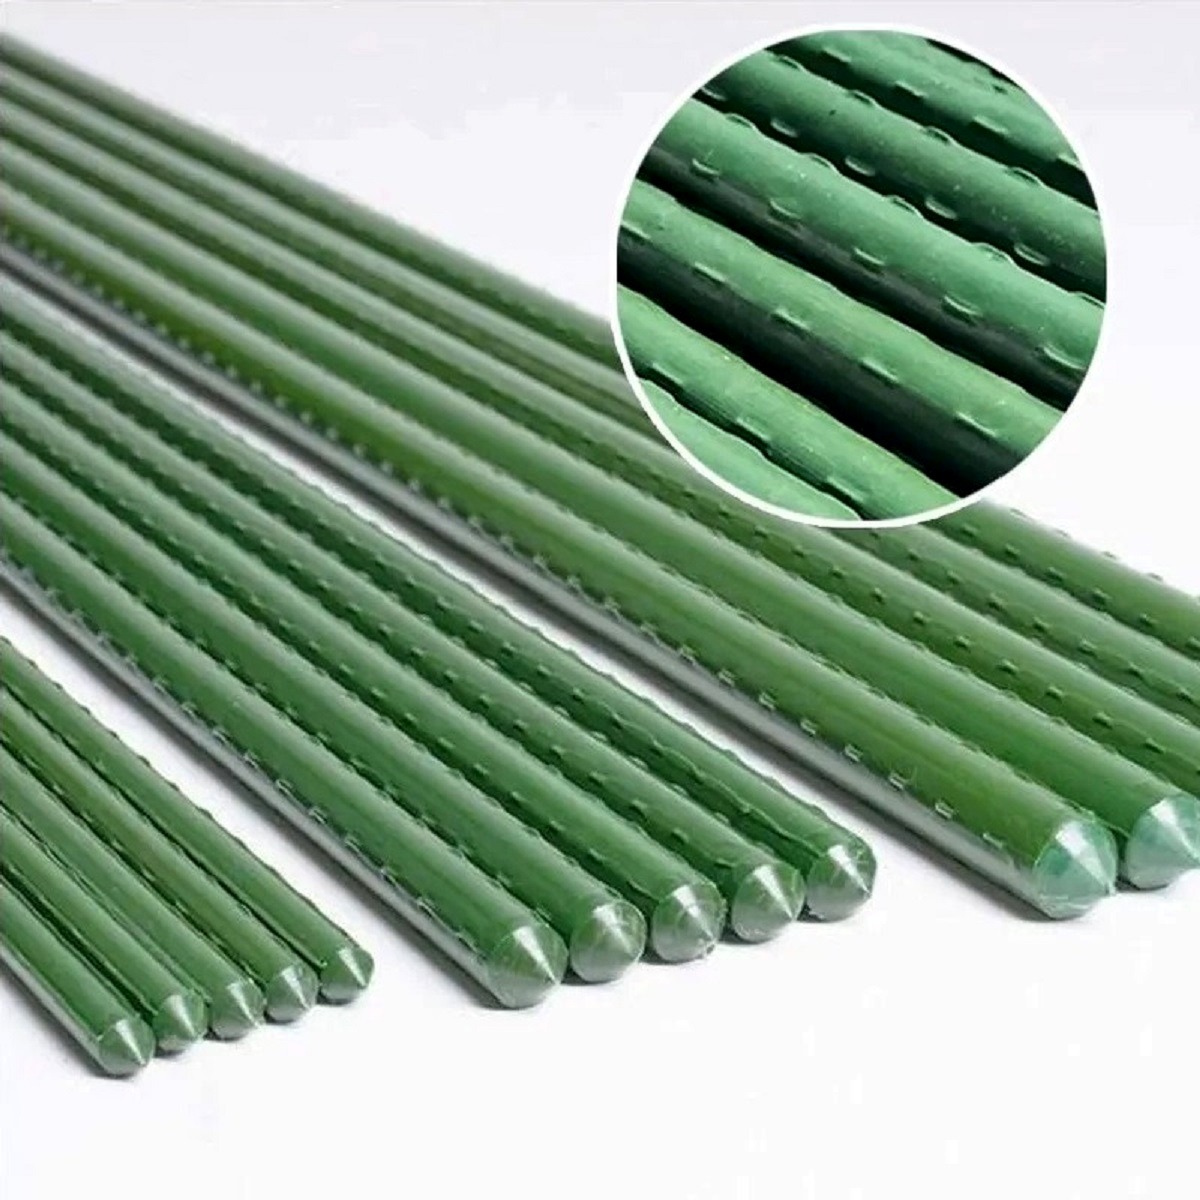 Металева опора для рослин Agrario 20-300 з пластиковим покриттям 20 мм х 3,0 м / Аграріо 20-300